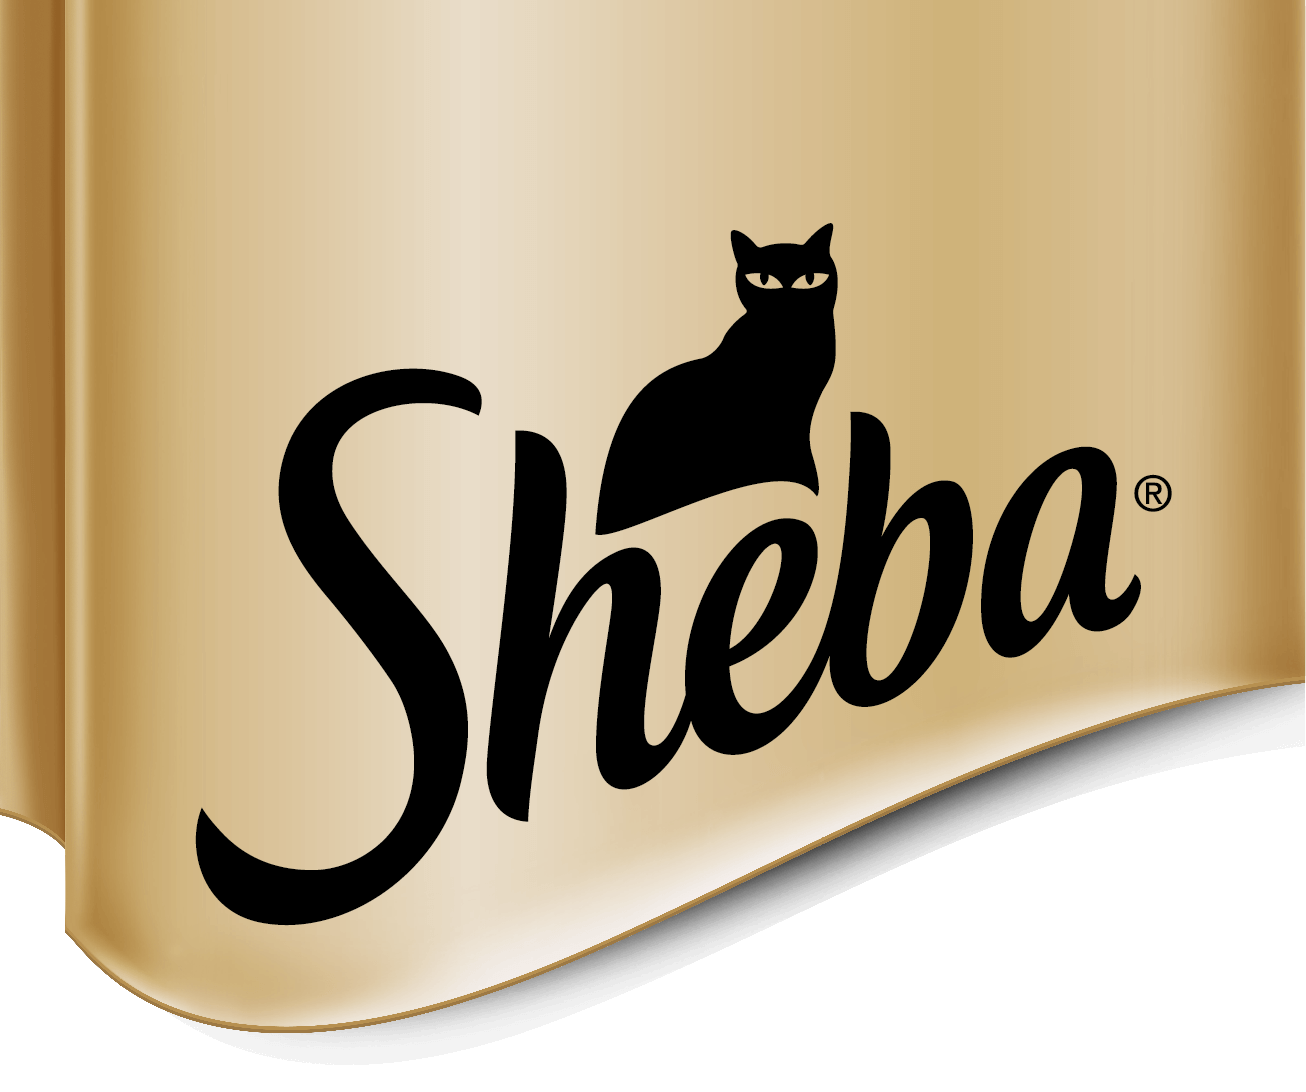 シーバ(Sheba® Japan) - とびきりの美味しさを追求したプレミアムキャットフード